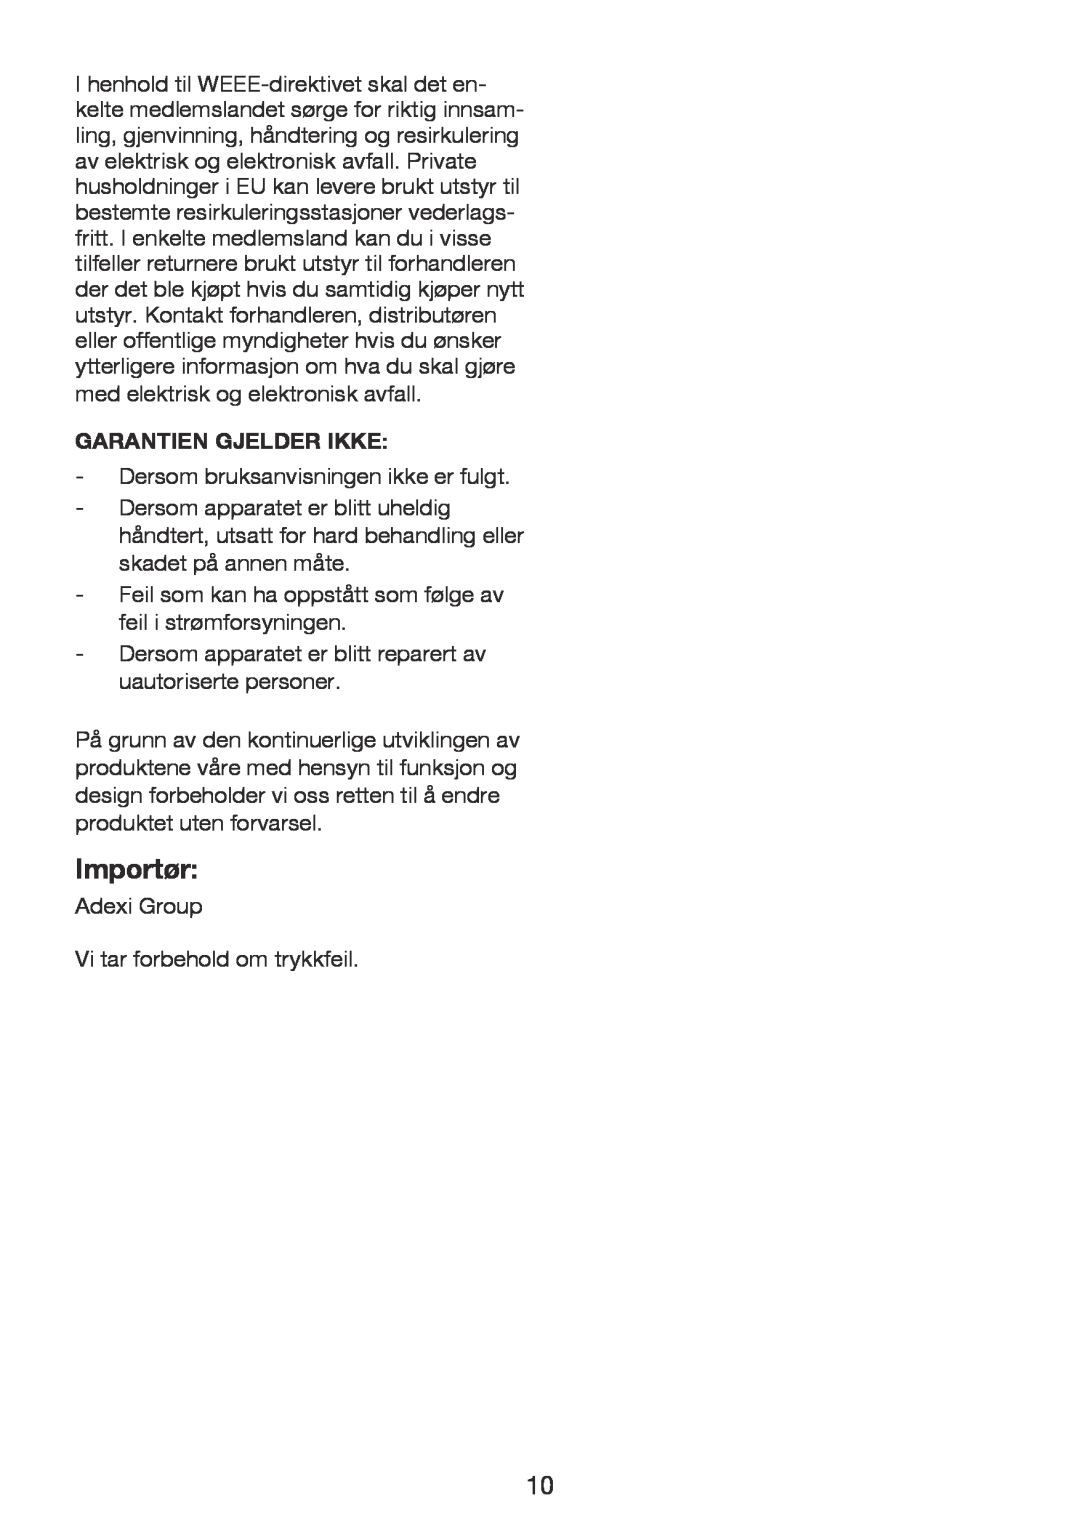 Exido 246-017 manual Importør, Garantien Gjelder Ikke 